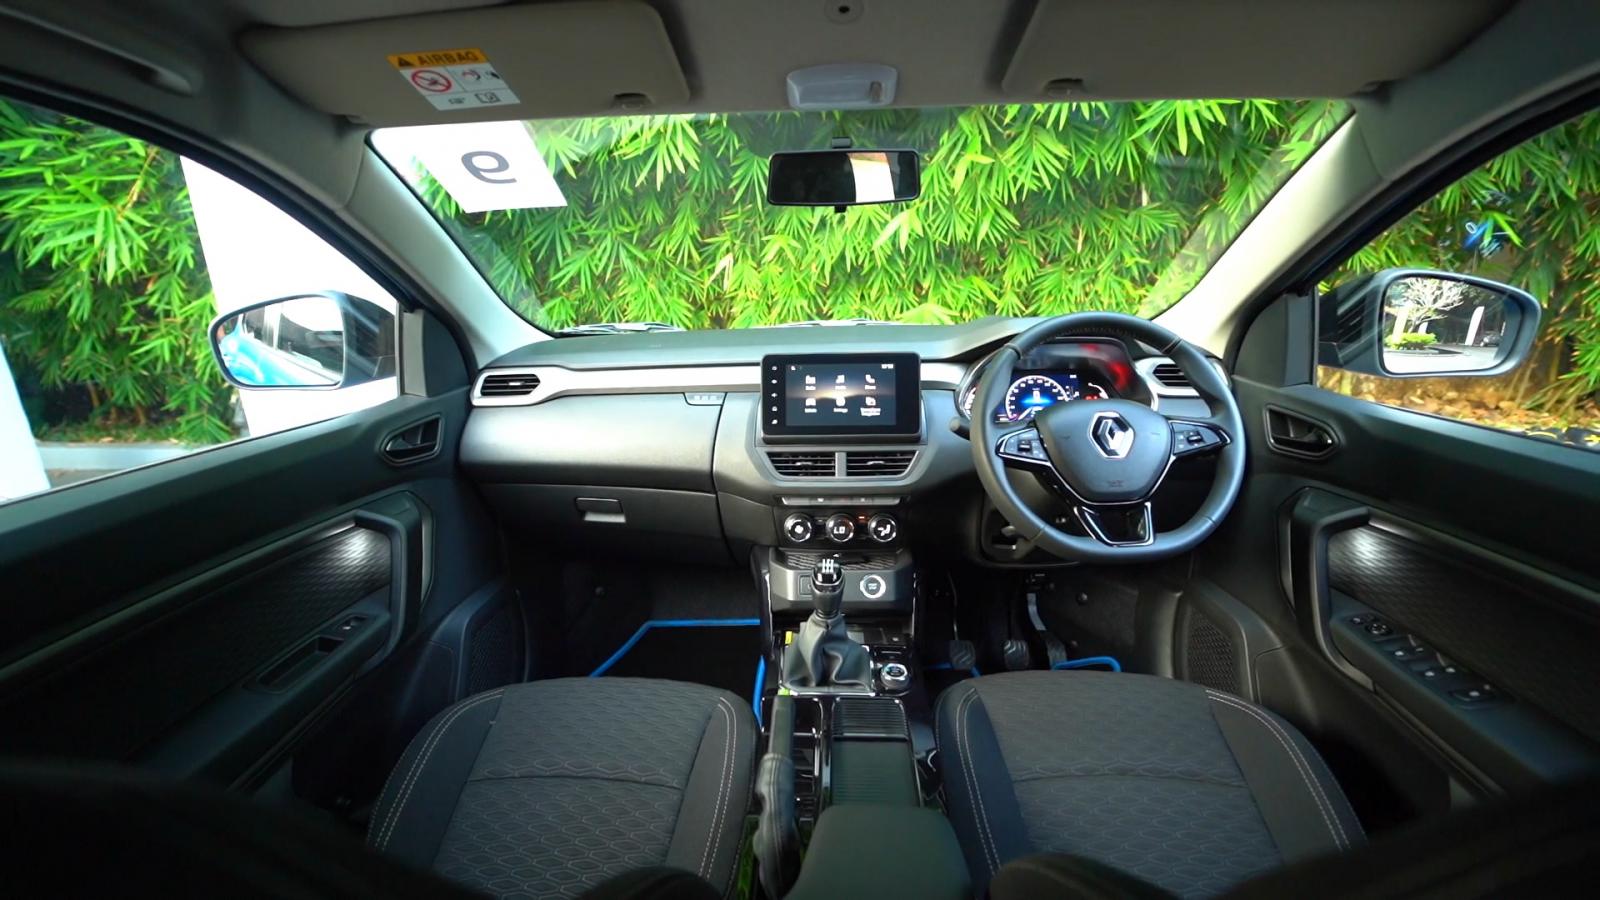 Ngày đầu mở bán, hơn 1.100 xe Renault Kiger được giao đến tay khách hàng renault-kiger-interior-dash-a9b9.jpg